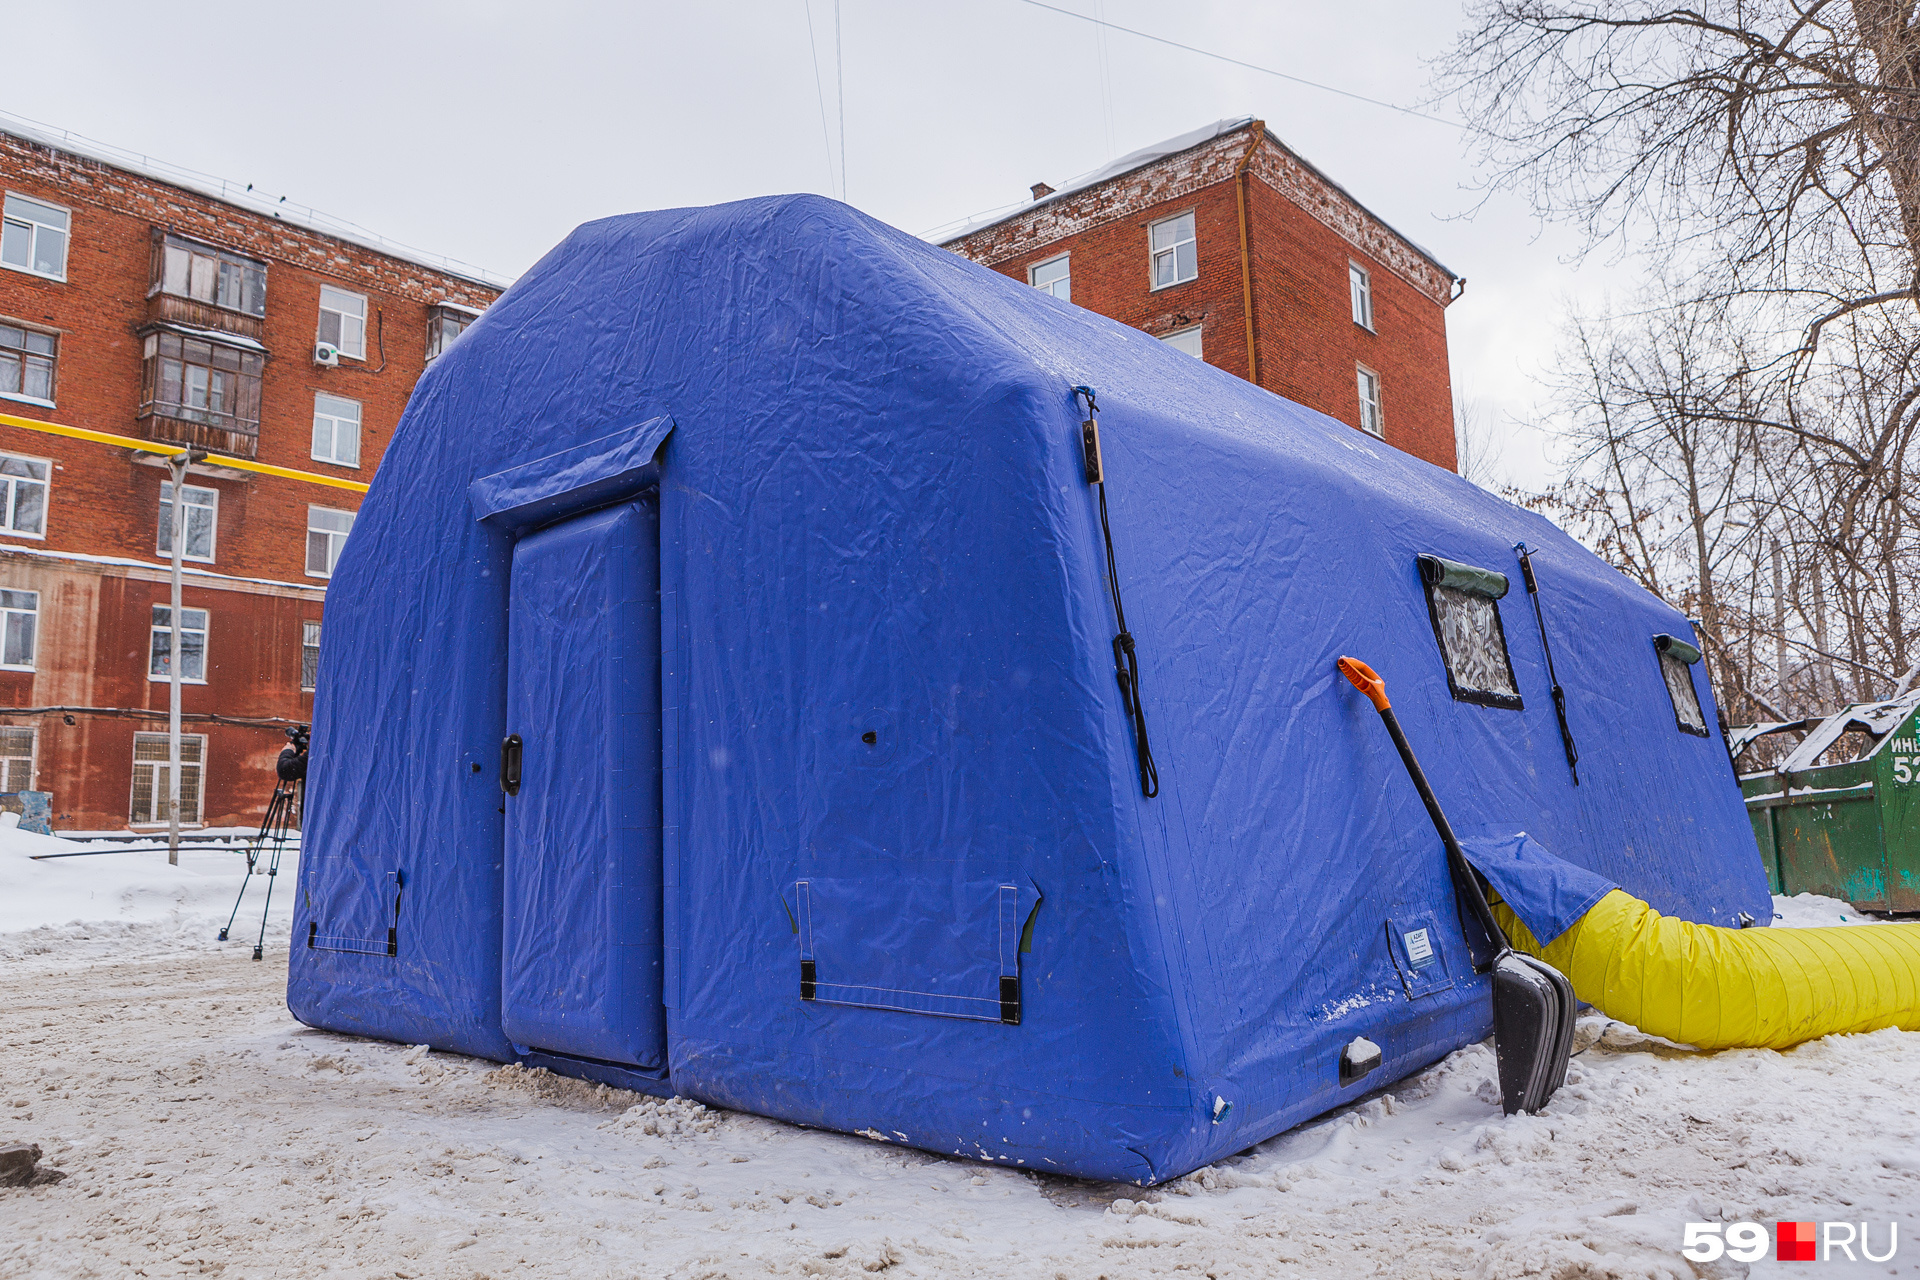 У дома стоит палатка МЧС. При необходимости в ней можно погреться